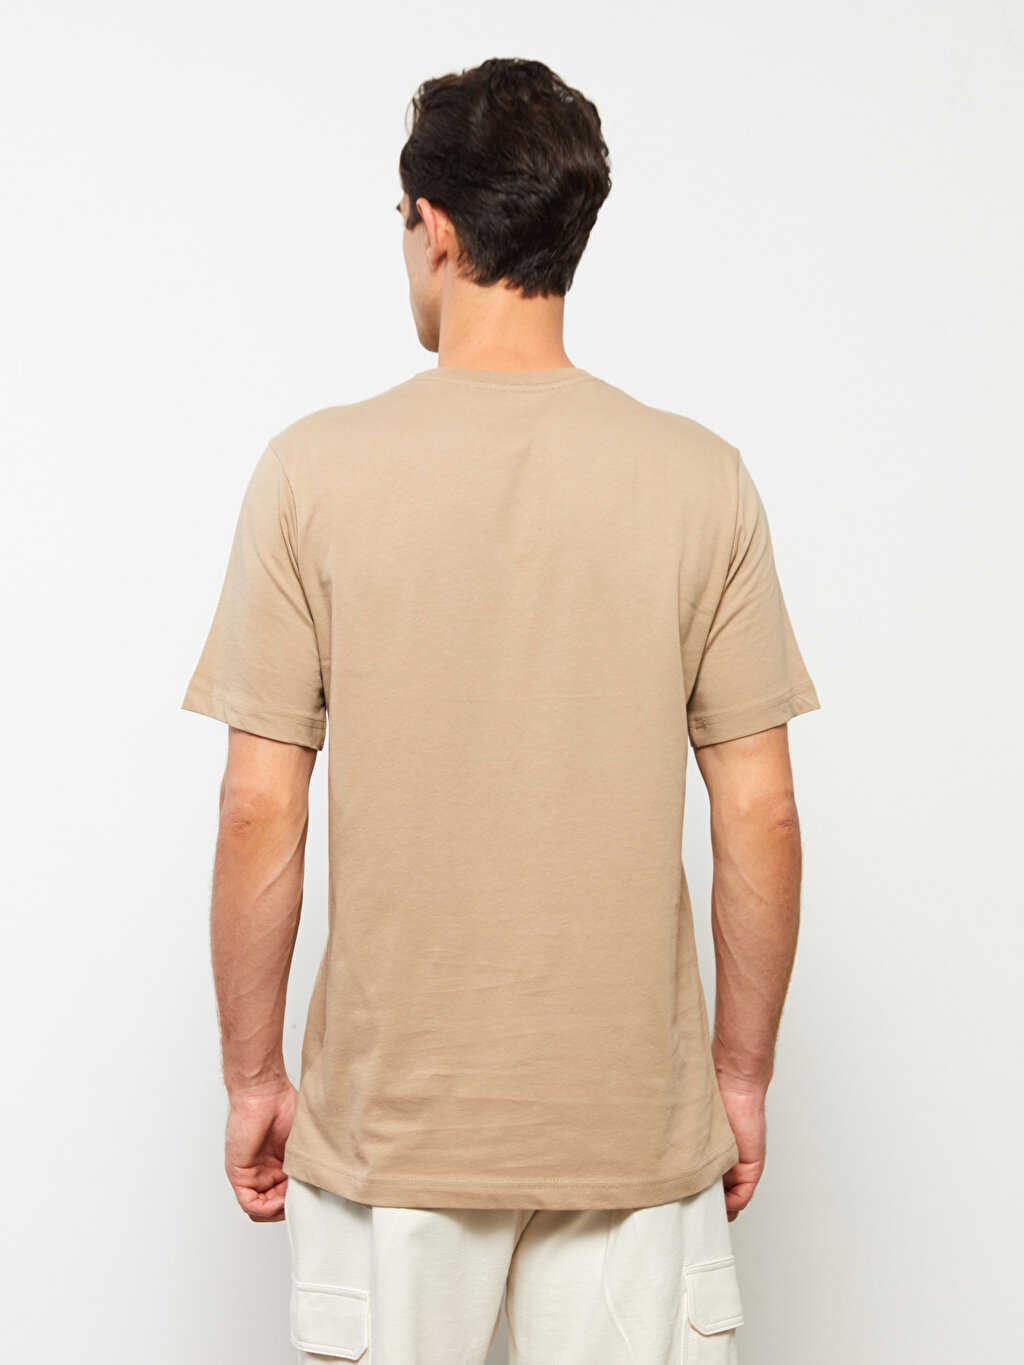 Crew Neck Short Sleeve Combed Cotton Mens T Shirt W21923z8 Gx6 W21923z8 Gx6 Lc Waikiki